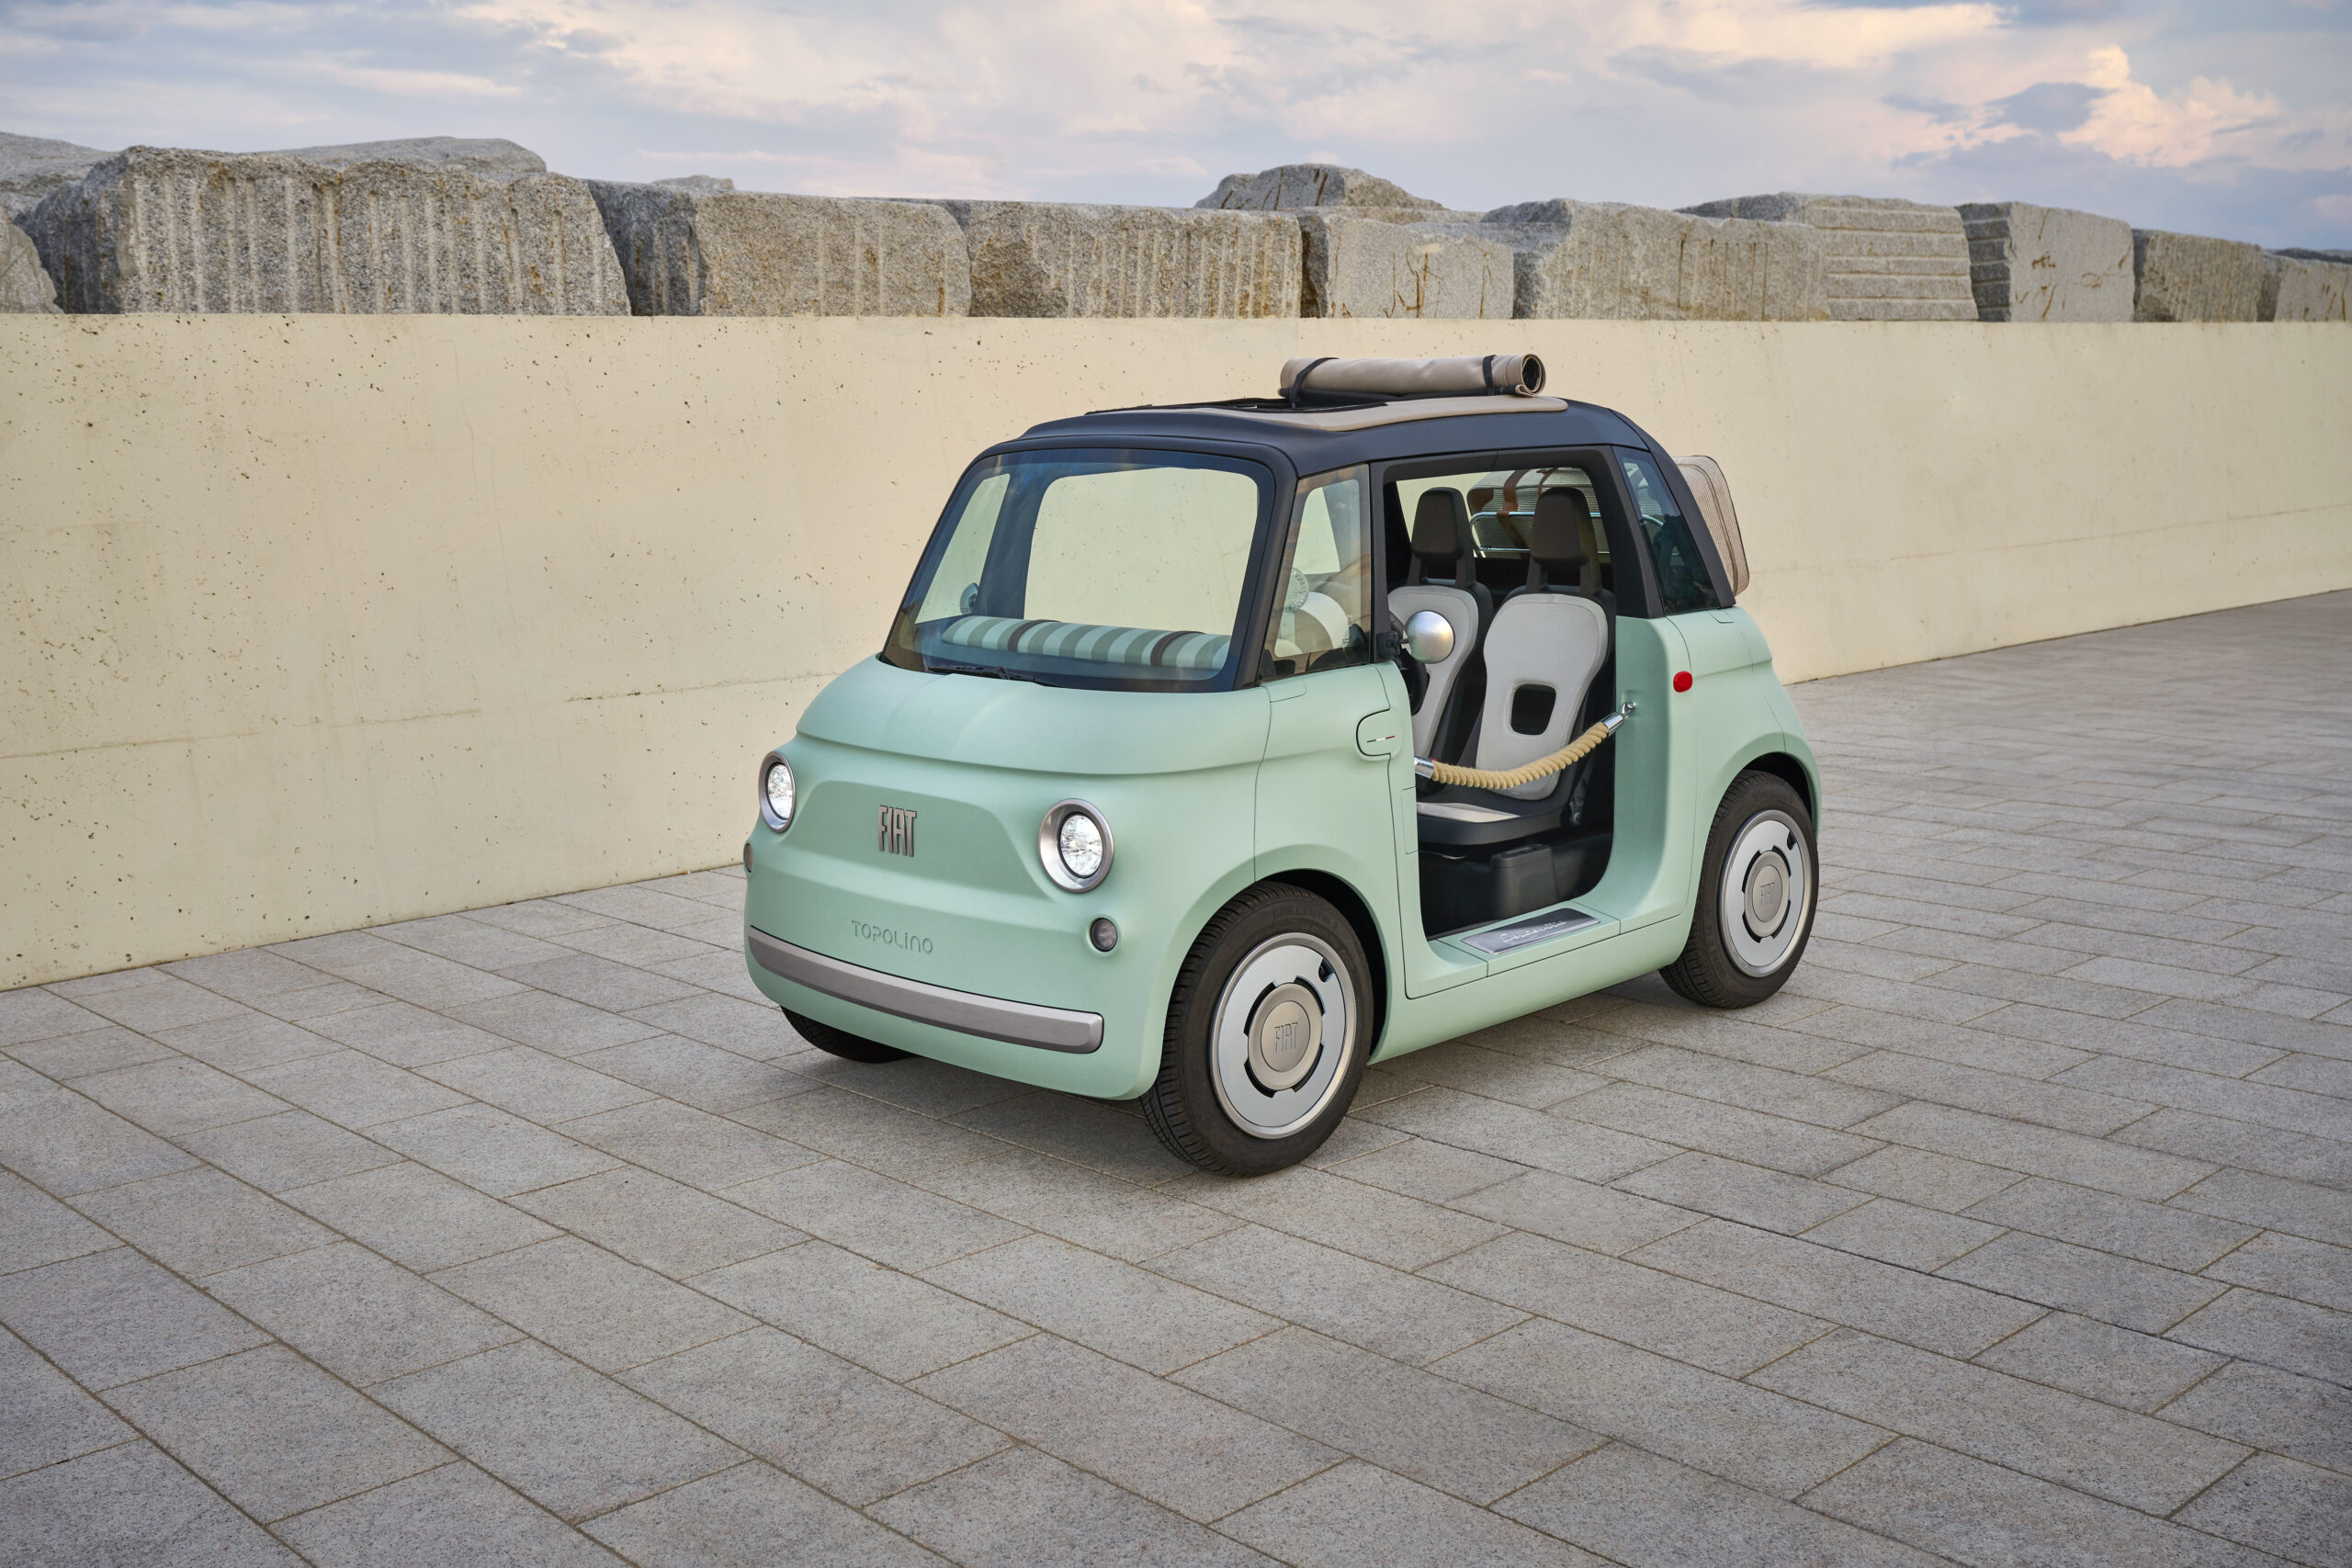 Nuova Fiat Topolino: la vettura che elettrizza la mobilità urbana con un tocco esclusivo di Dolce Vita